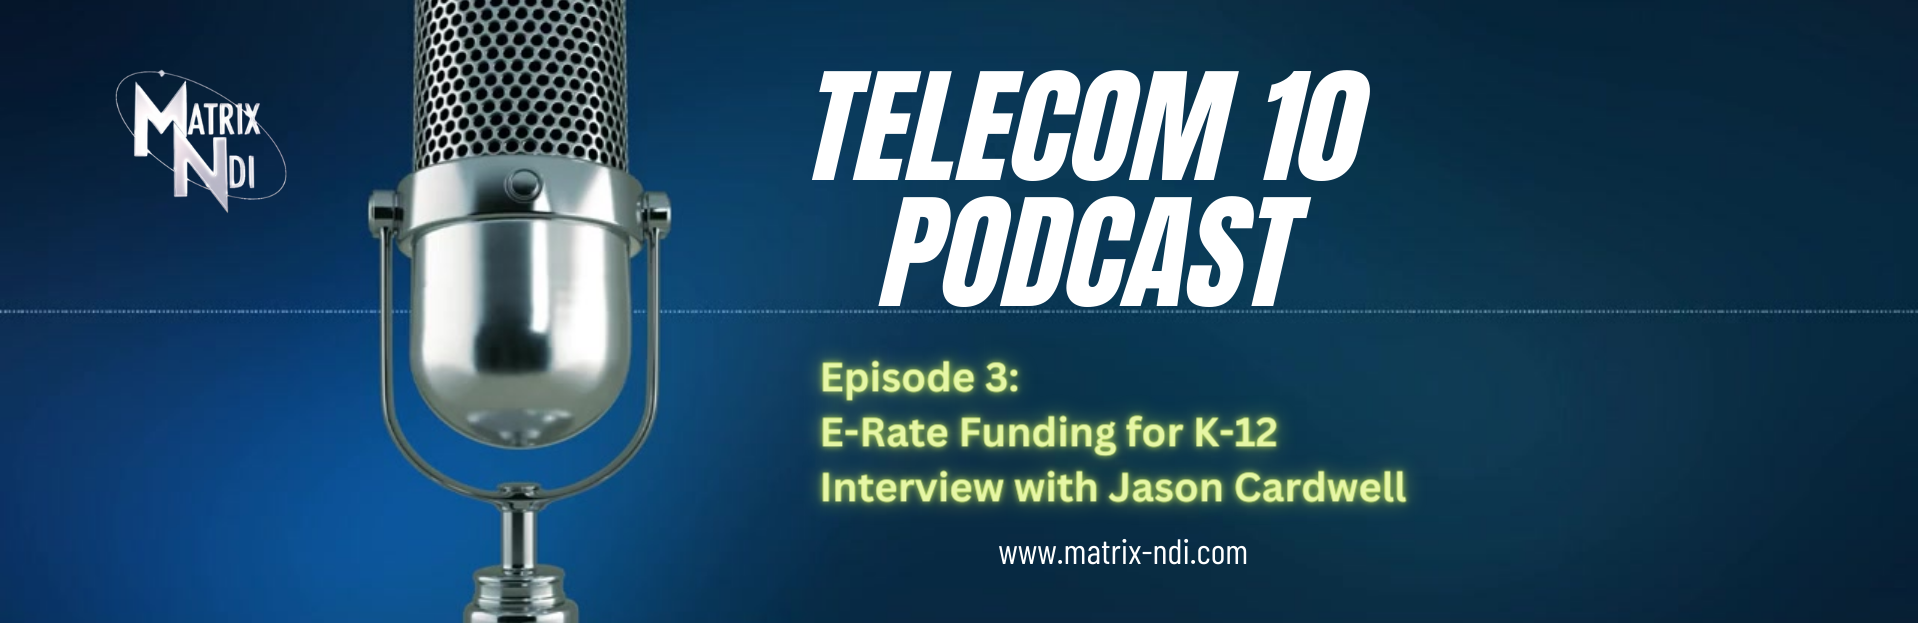 Matrix-NDI Telecom 10 Podcast 3: E-rate Funding for K-12